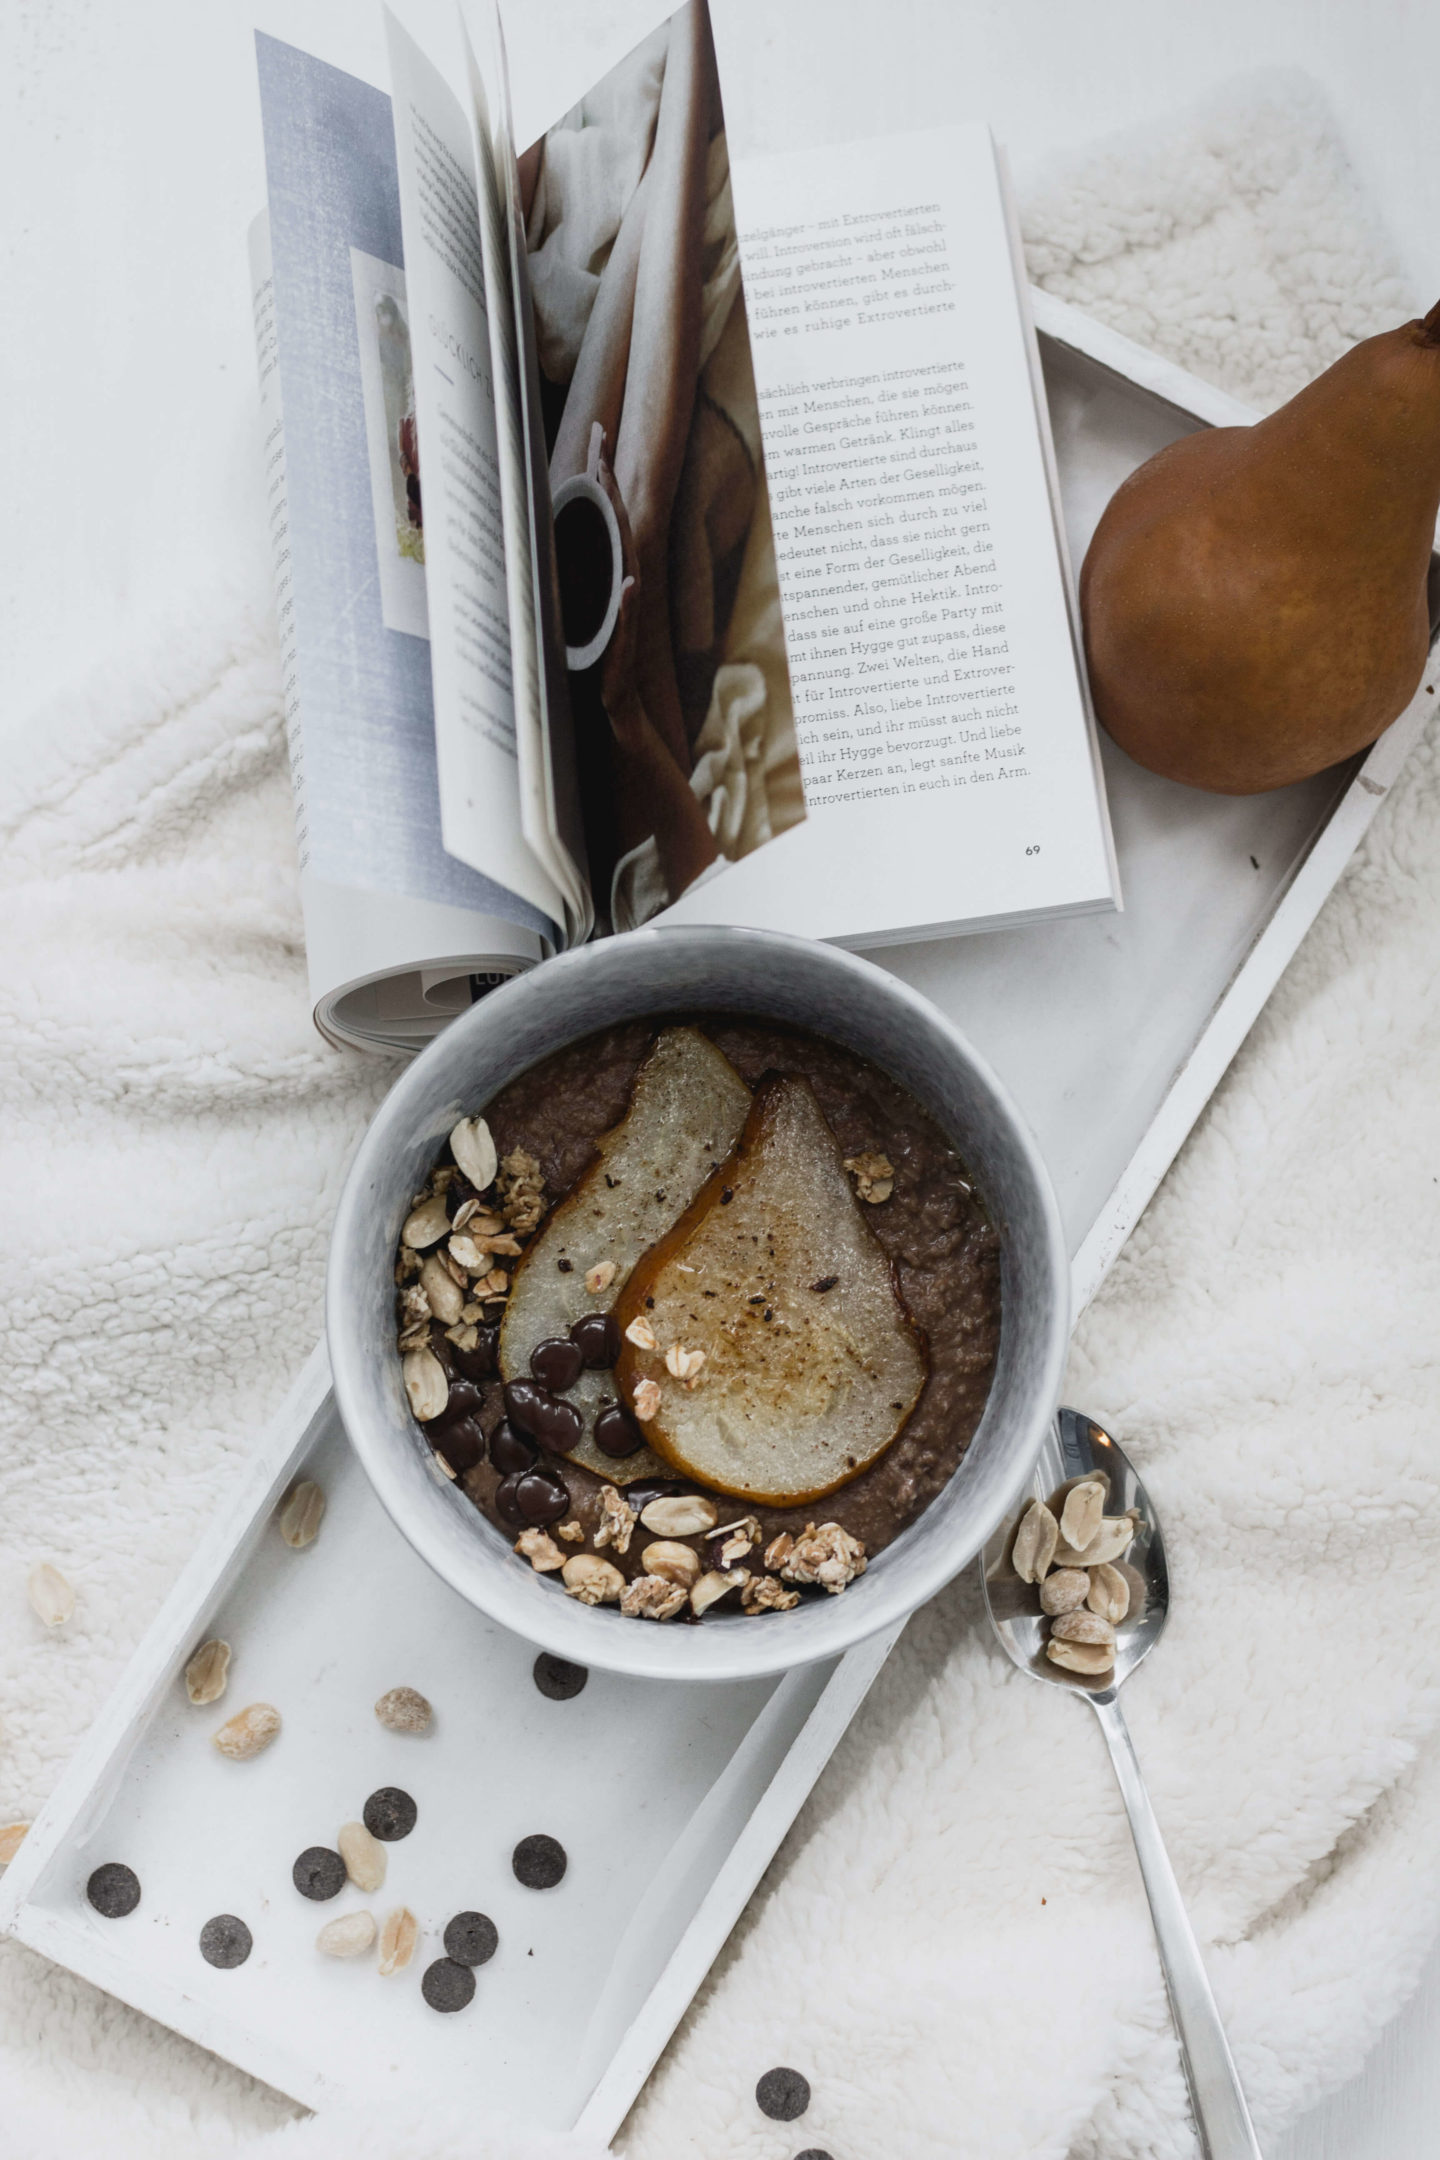 Schokoladen Hirsebrei mit Birne-Erdnüsse-Zuckerfrei-Granola-Soulfood-Veganes Frühstück-Dein HomeSpa – Food & Lifestyleblog aus dem Mostviertel